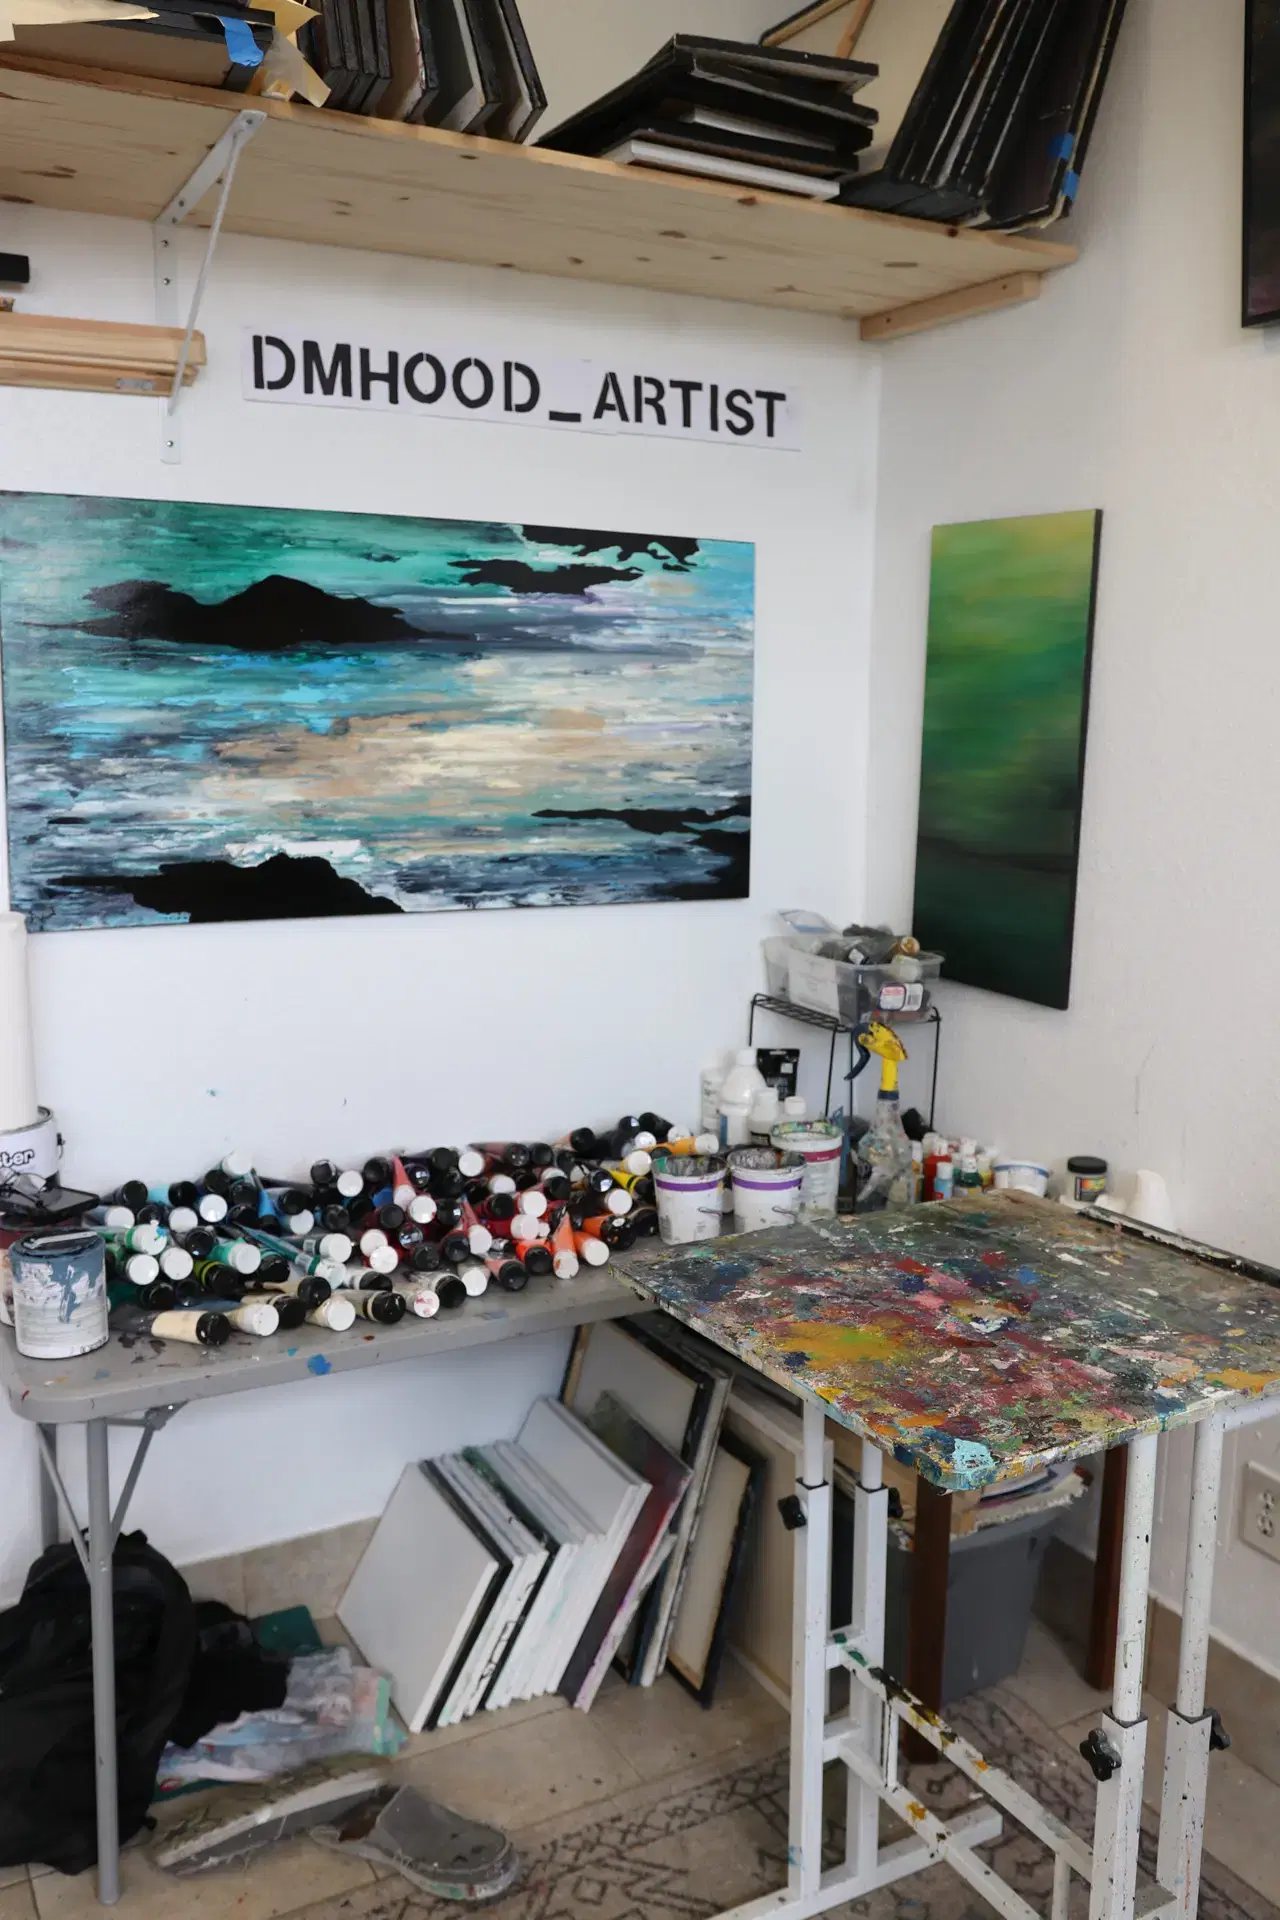 Dennis Hood"s studio space.